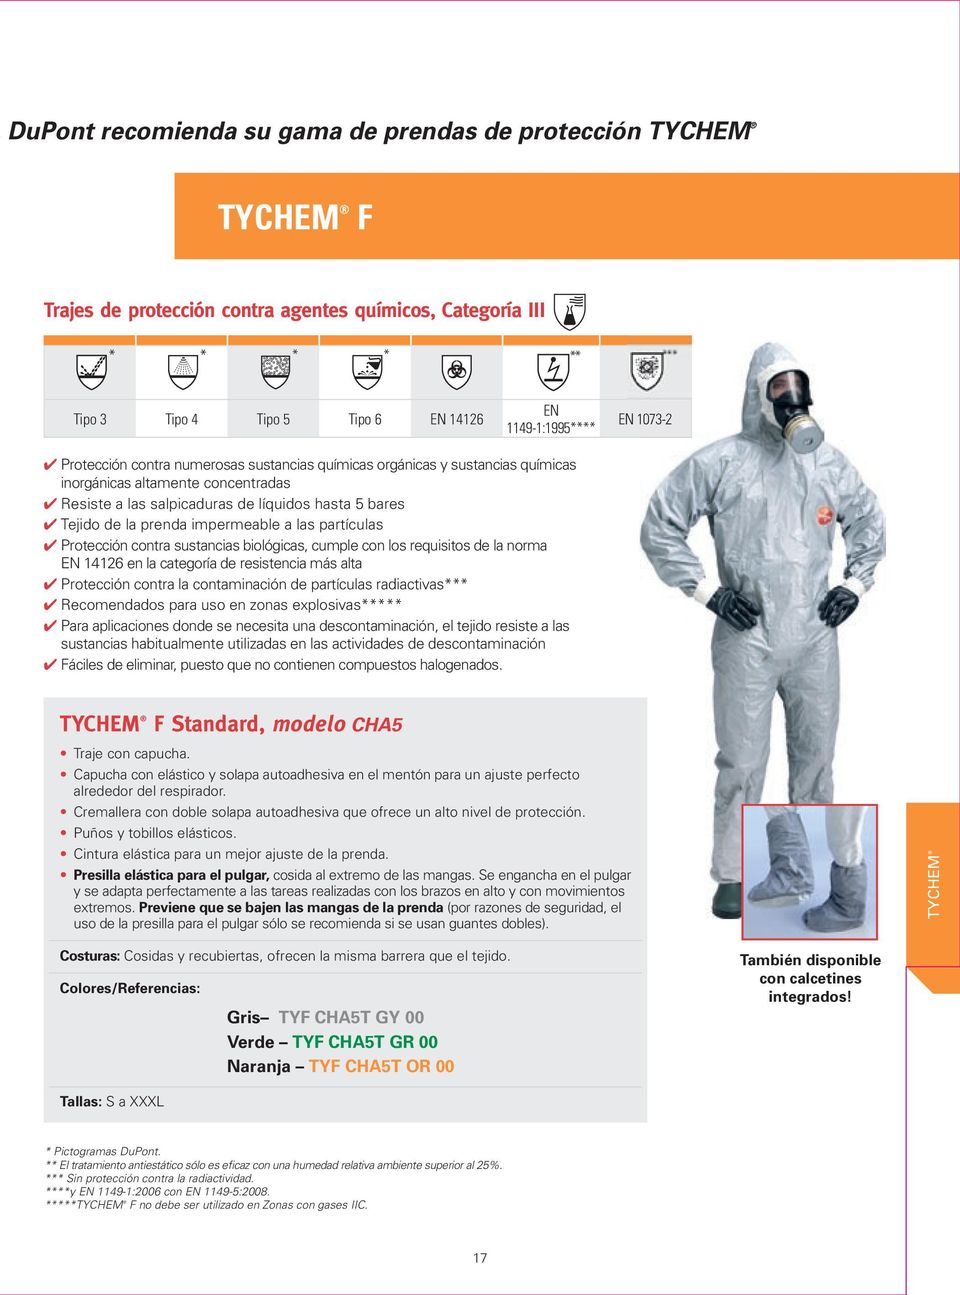 Tejido de la prenda impermeable a las partículas Protección contra sustancias biológicas, cumple con los requisitos de la norma EN 14126 en la categoría de resistencia más alta Protección contra la